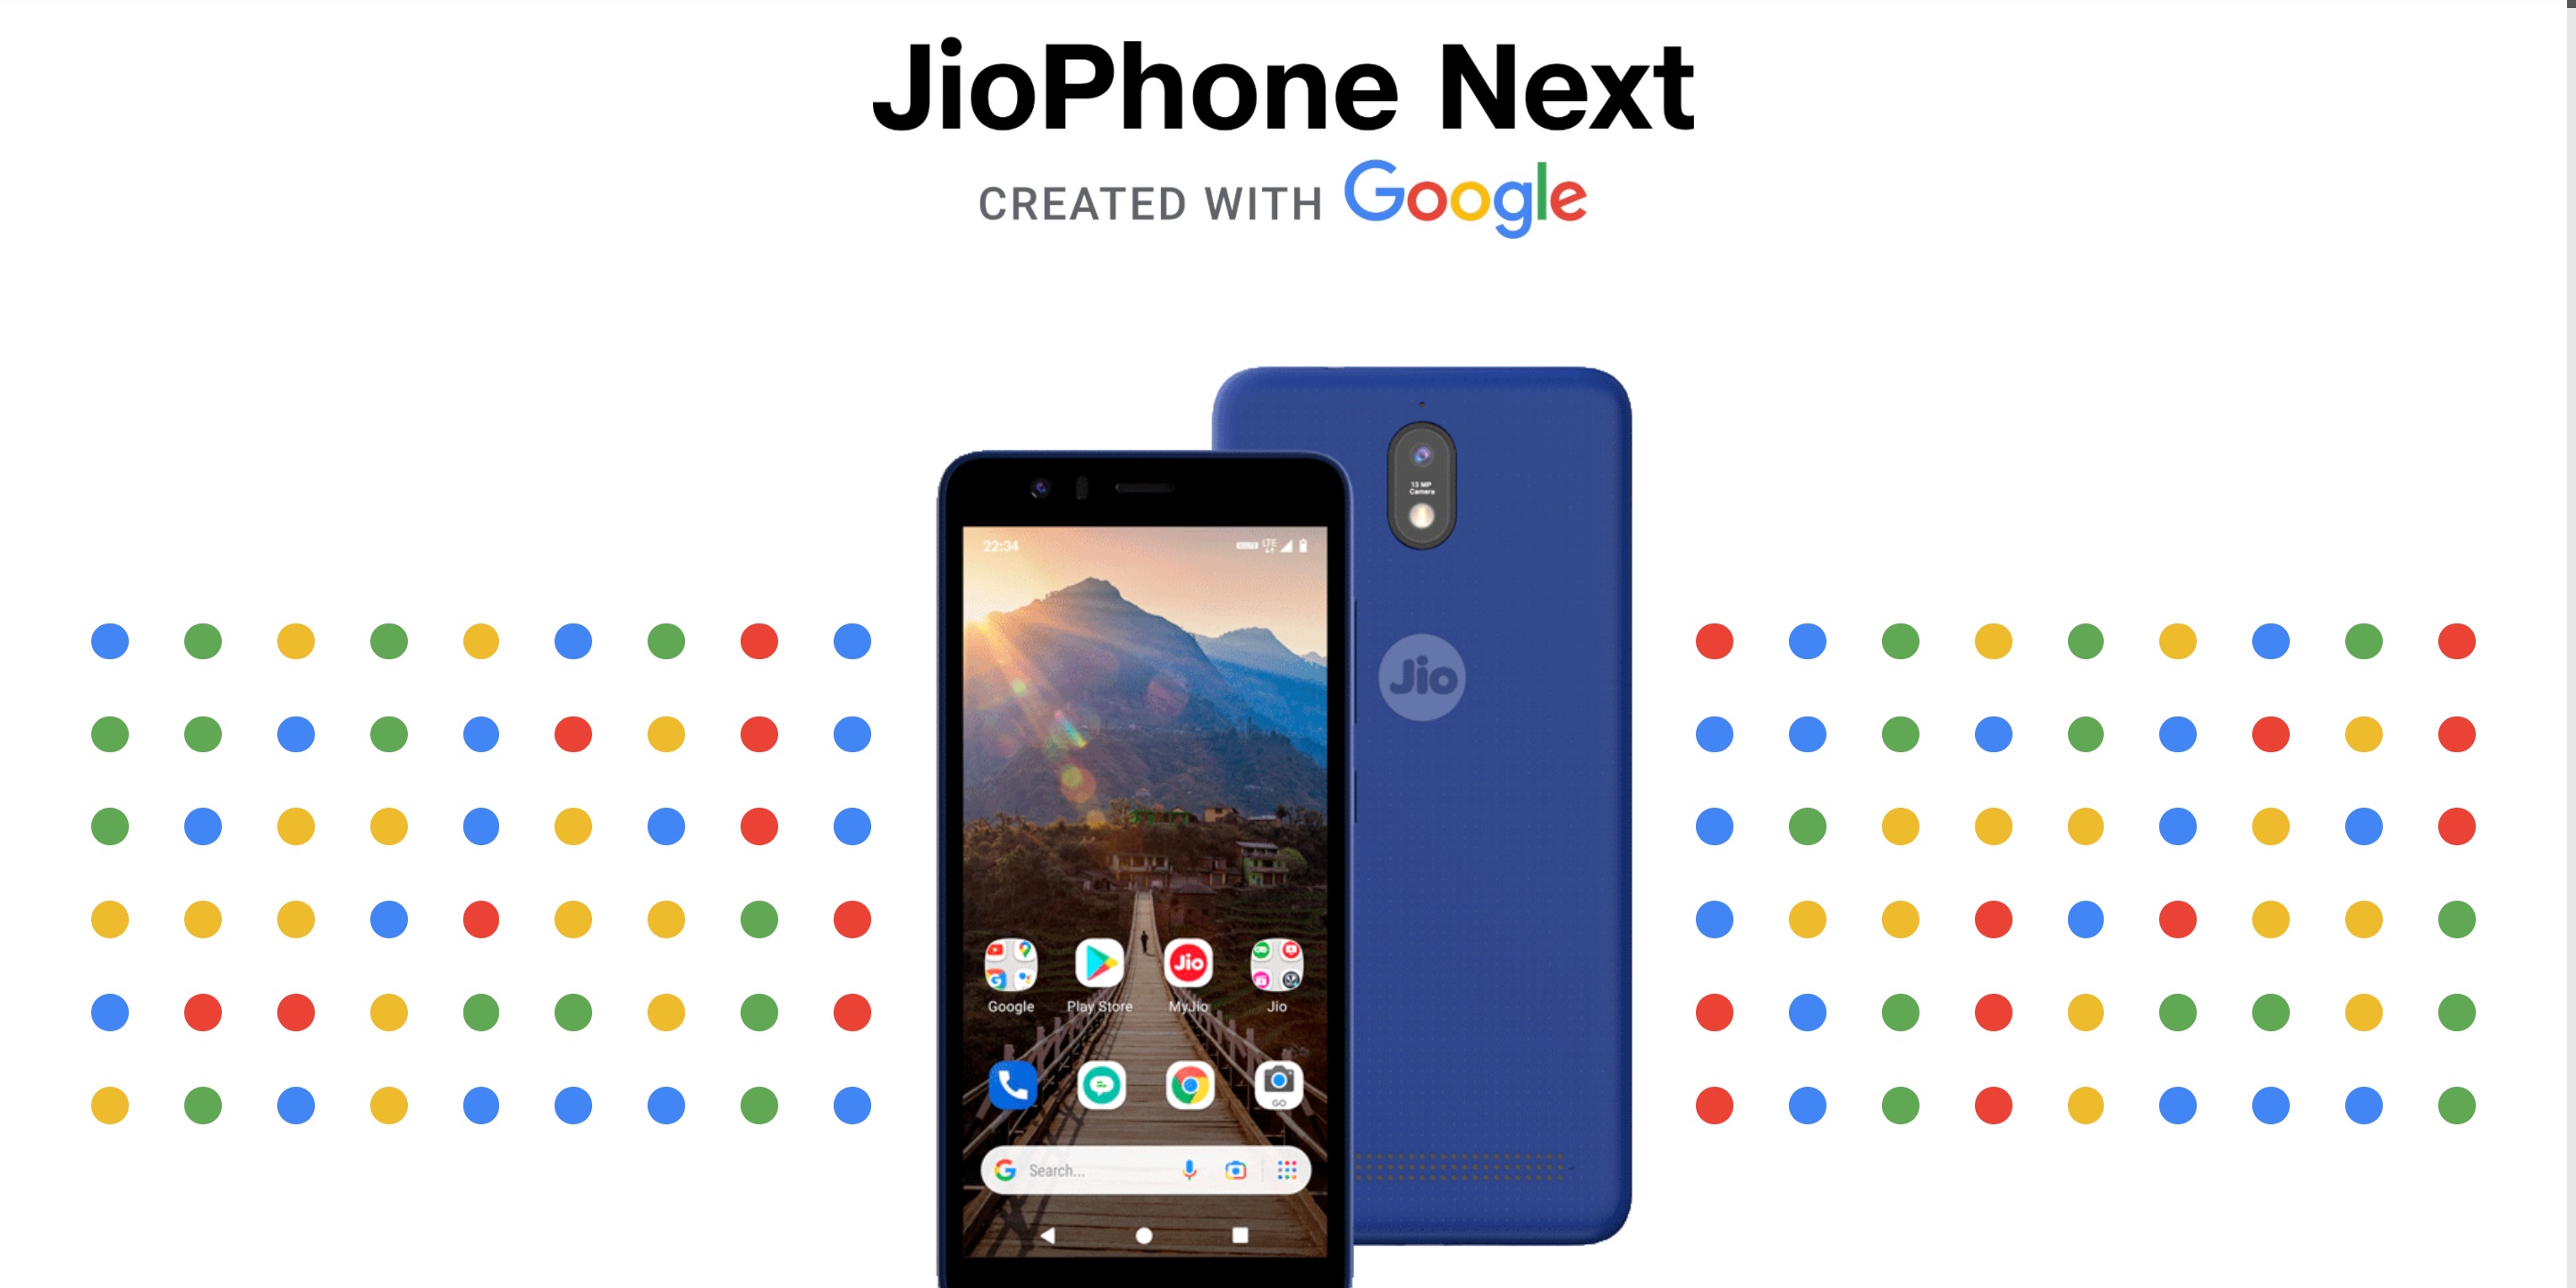 Der Preis des "günstigsten 4G-Smartphones der Welt" JioPhone Next, das in Zusammenarbeit mit Google entwickelt wurde, wurde endlich bekannt gegeben